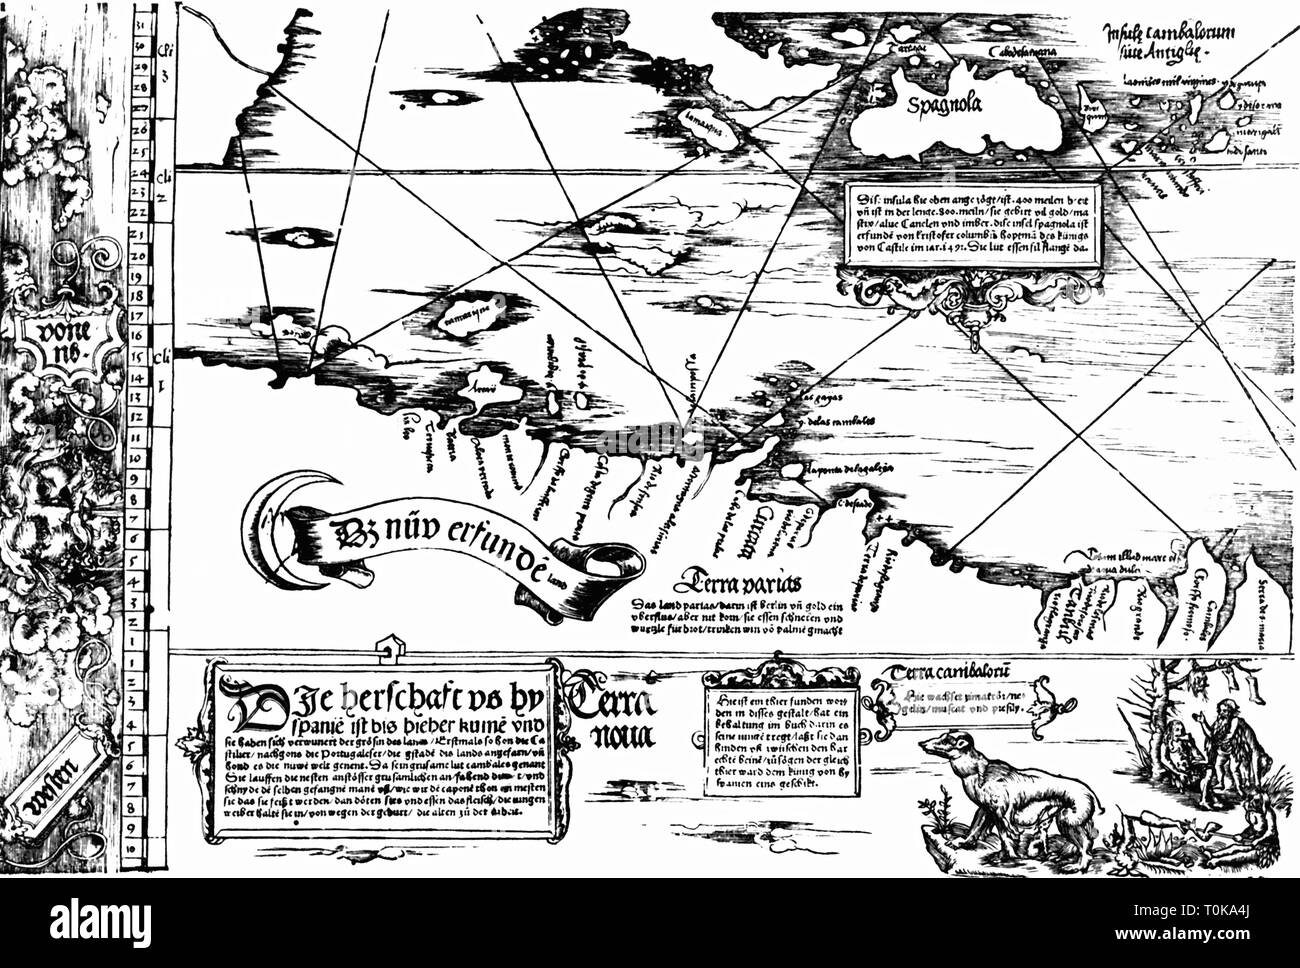 Cartografia, mappa, Caraibi e costa nord del Venezuela, "Carta Marina Navigatoria Portugallensis', dettaglio, xilografia, Germania, 1525, Additional-Rights-Clearance-Info-Not-Available Foto Stock